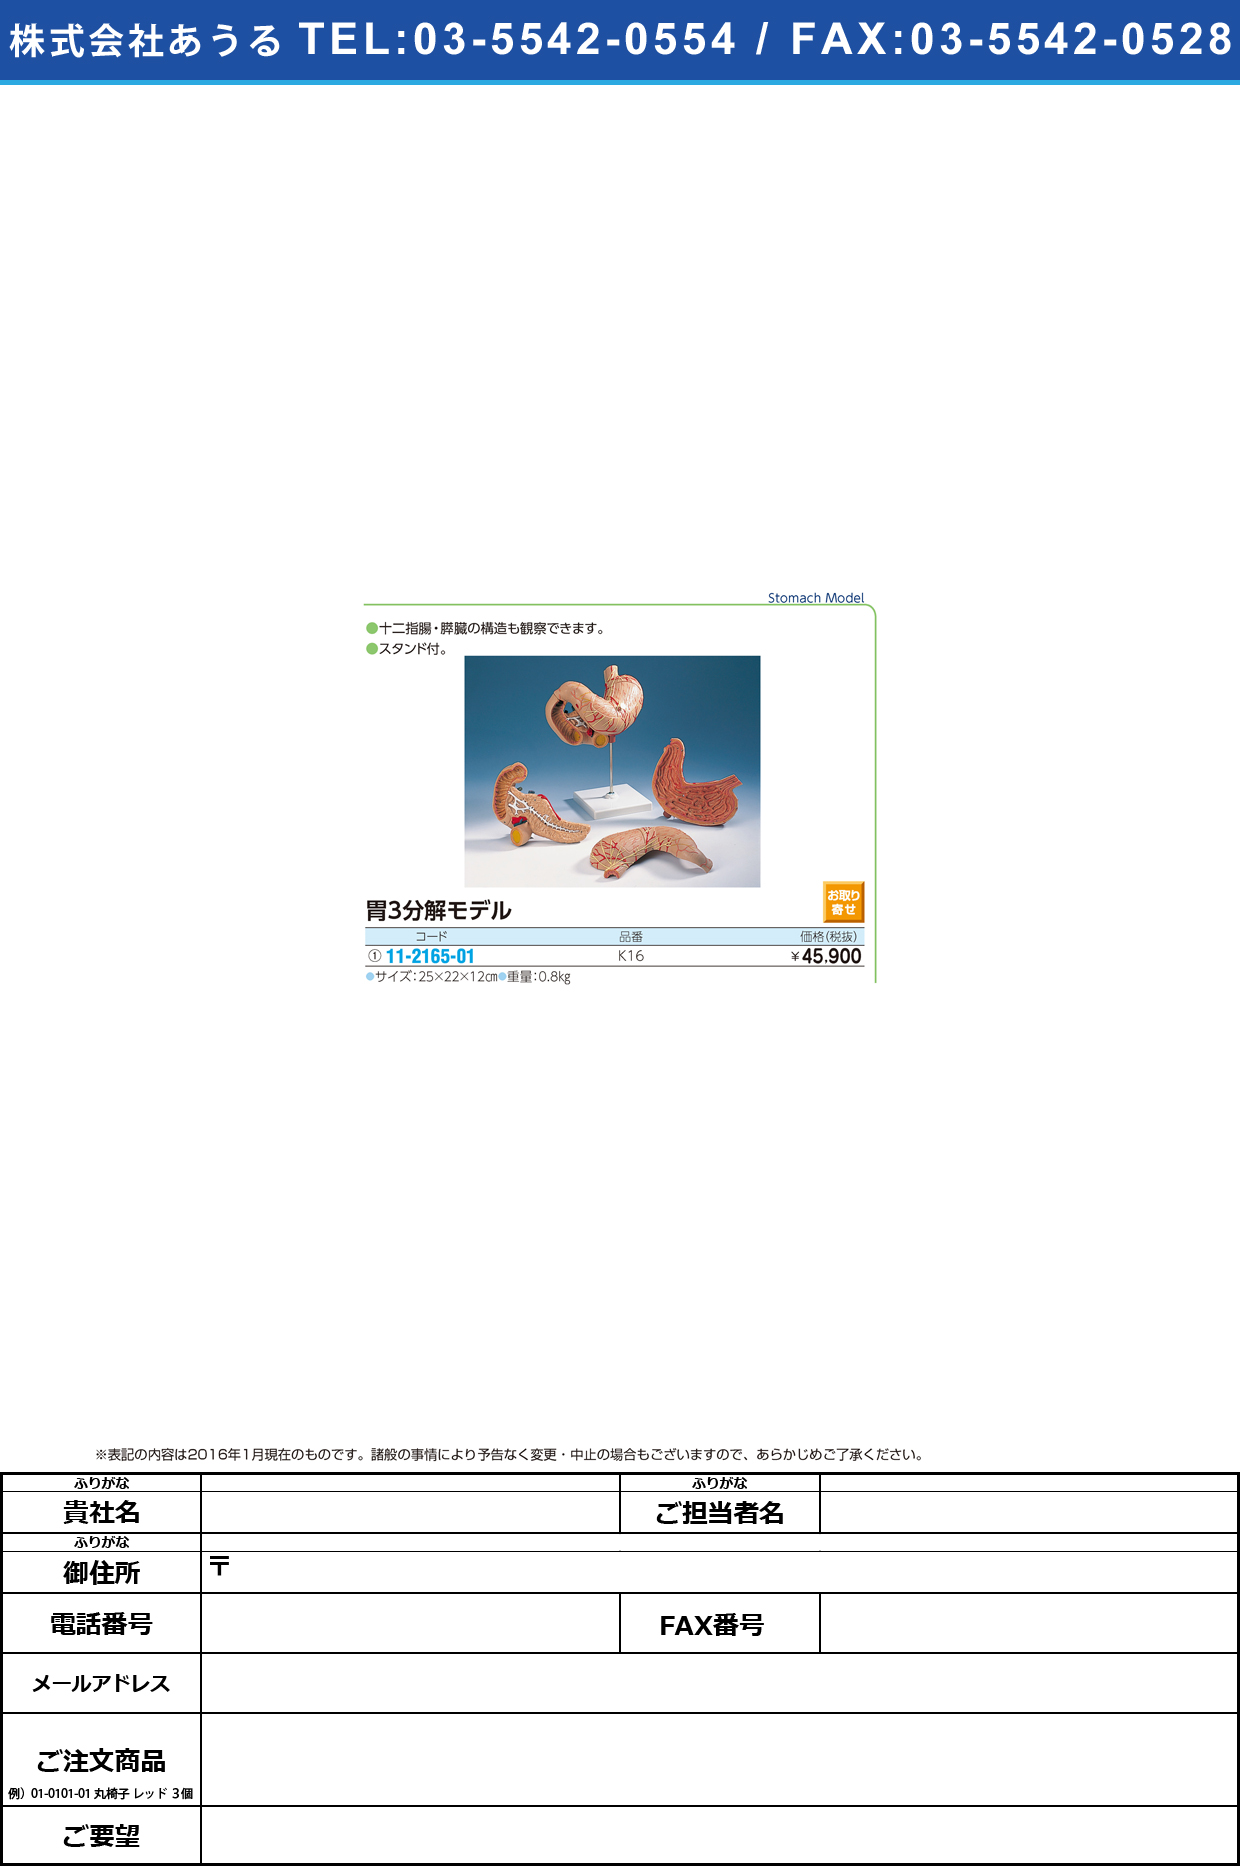 (11-2165-01)胃モデル（３分解） ｲﾓﾃﾞﾙ(3ﾌﾞﾝｶｲ) K16 (25X19X12CM)【1台単位】【2016年カタログ商品】